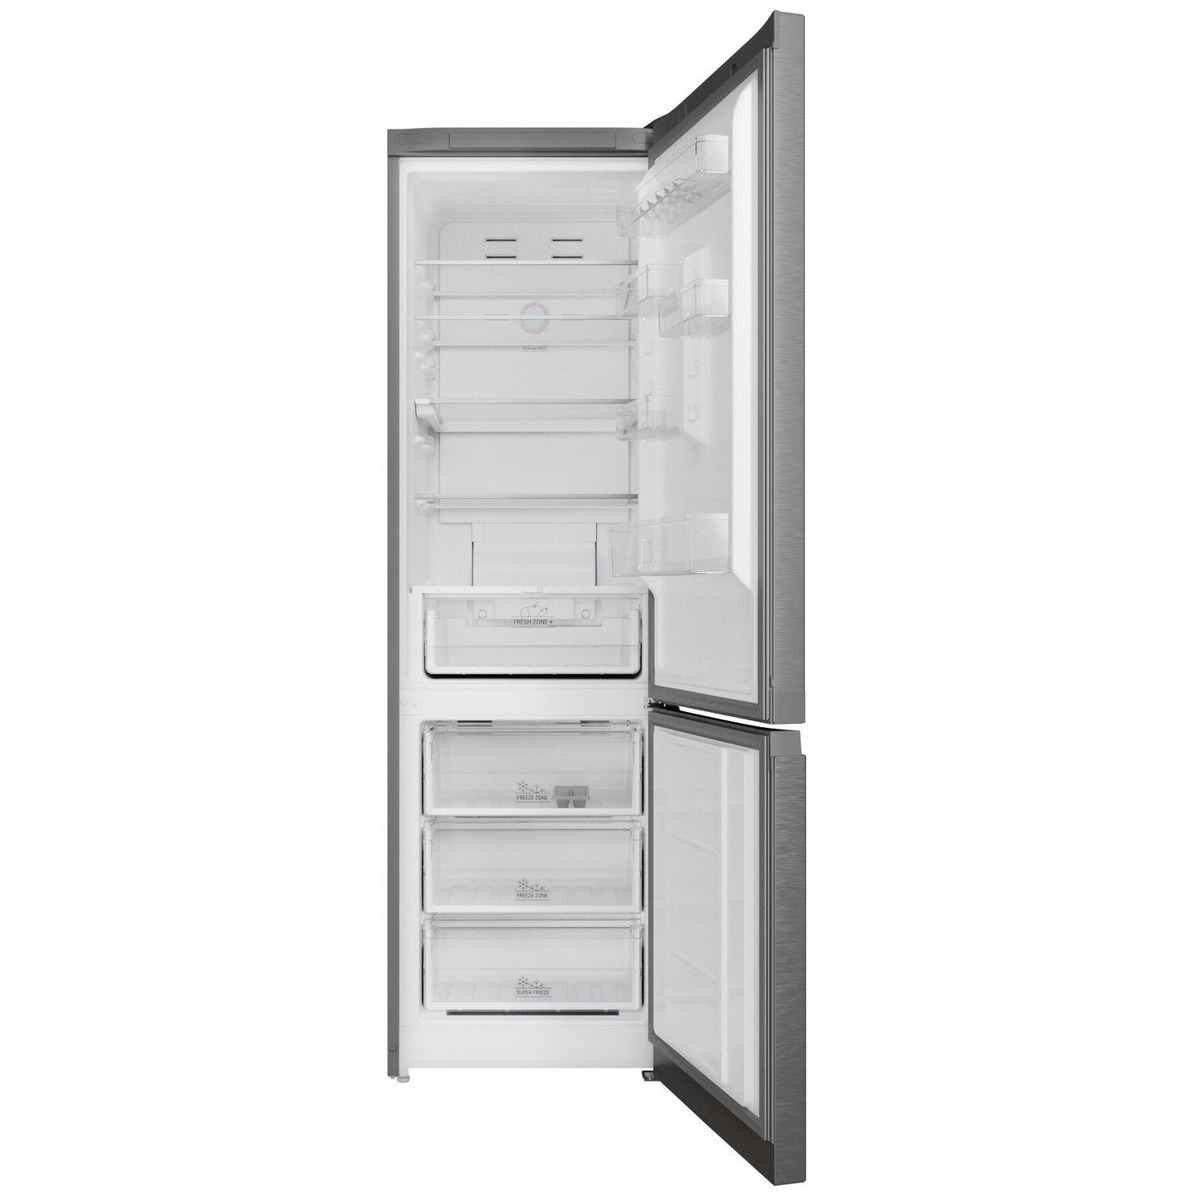 Холодильник Hotpoint HT 7201I MX O3 (Цвет: Inox)